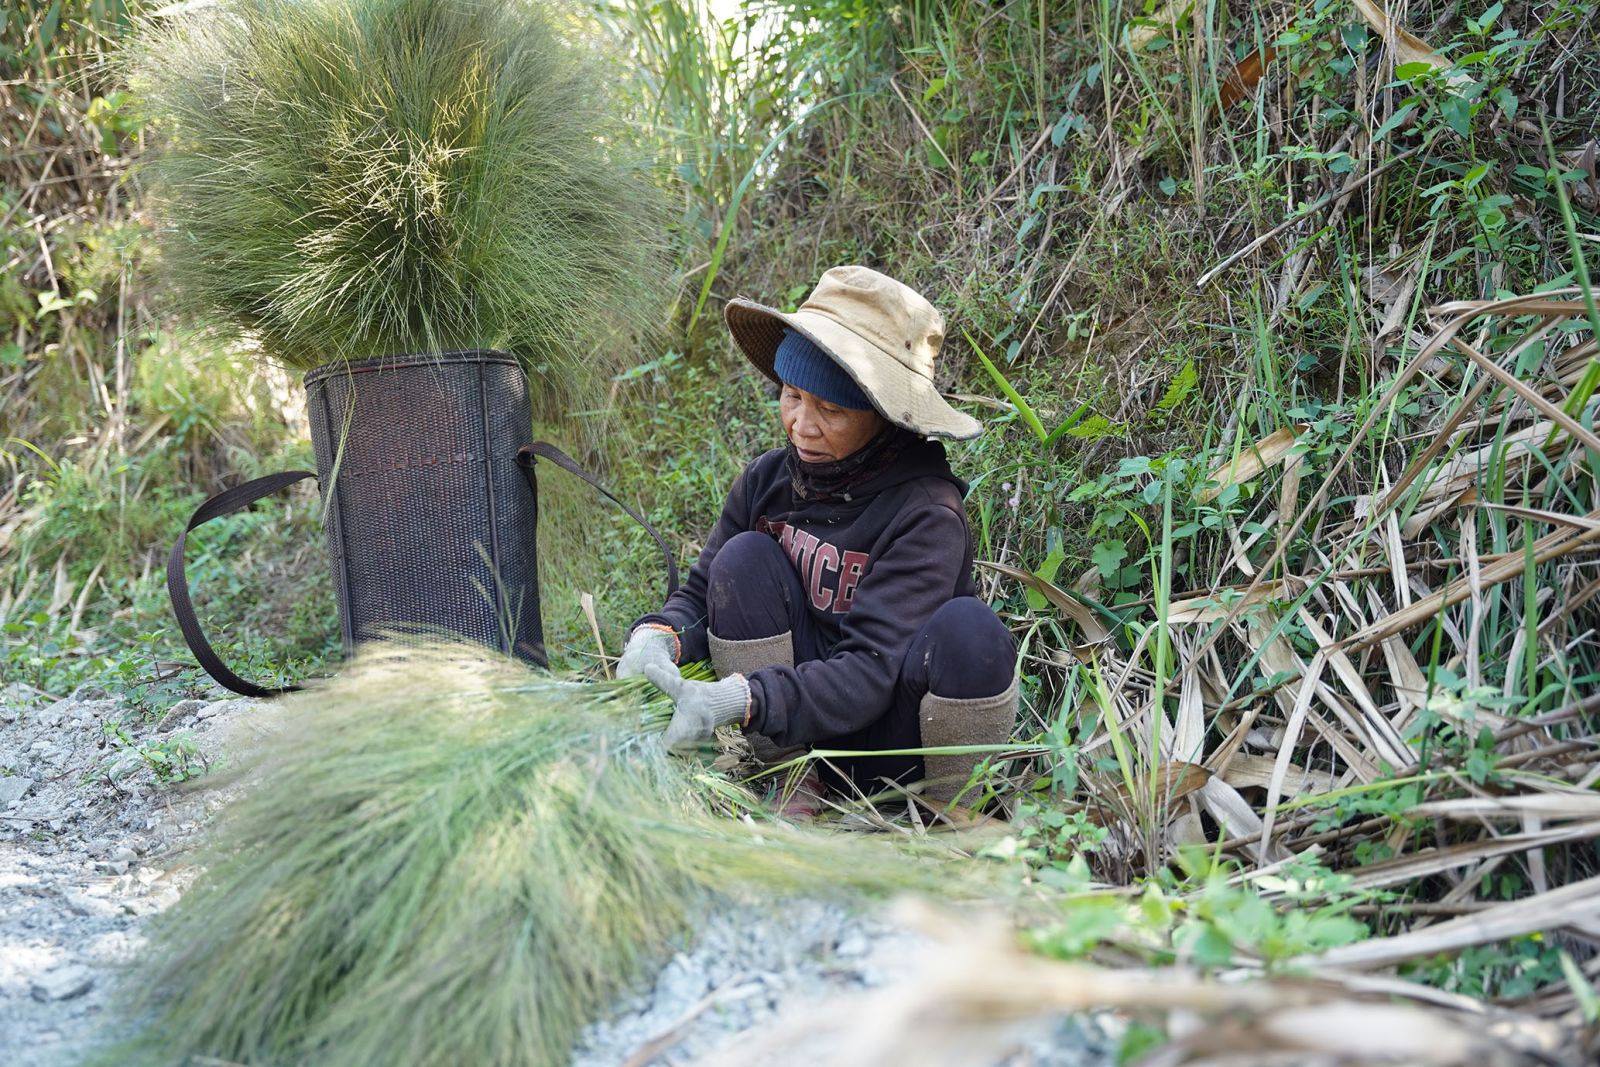 Vùng đất phía Tây của TT-Huế, dân lên đồi nhổ bông cỏ dại mang cân bán, kiếm thêm tiền khi nông nhàn - Ảnh 1.